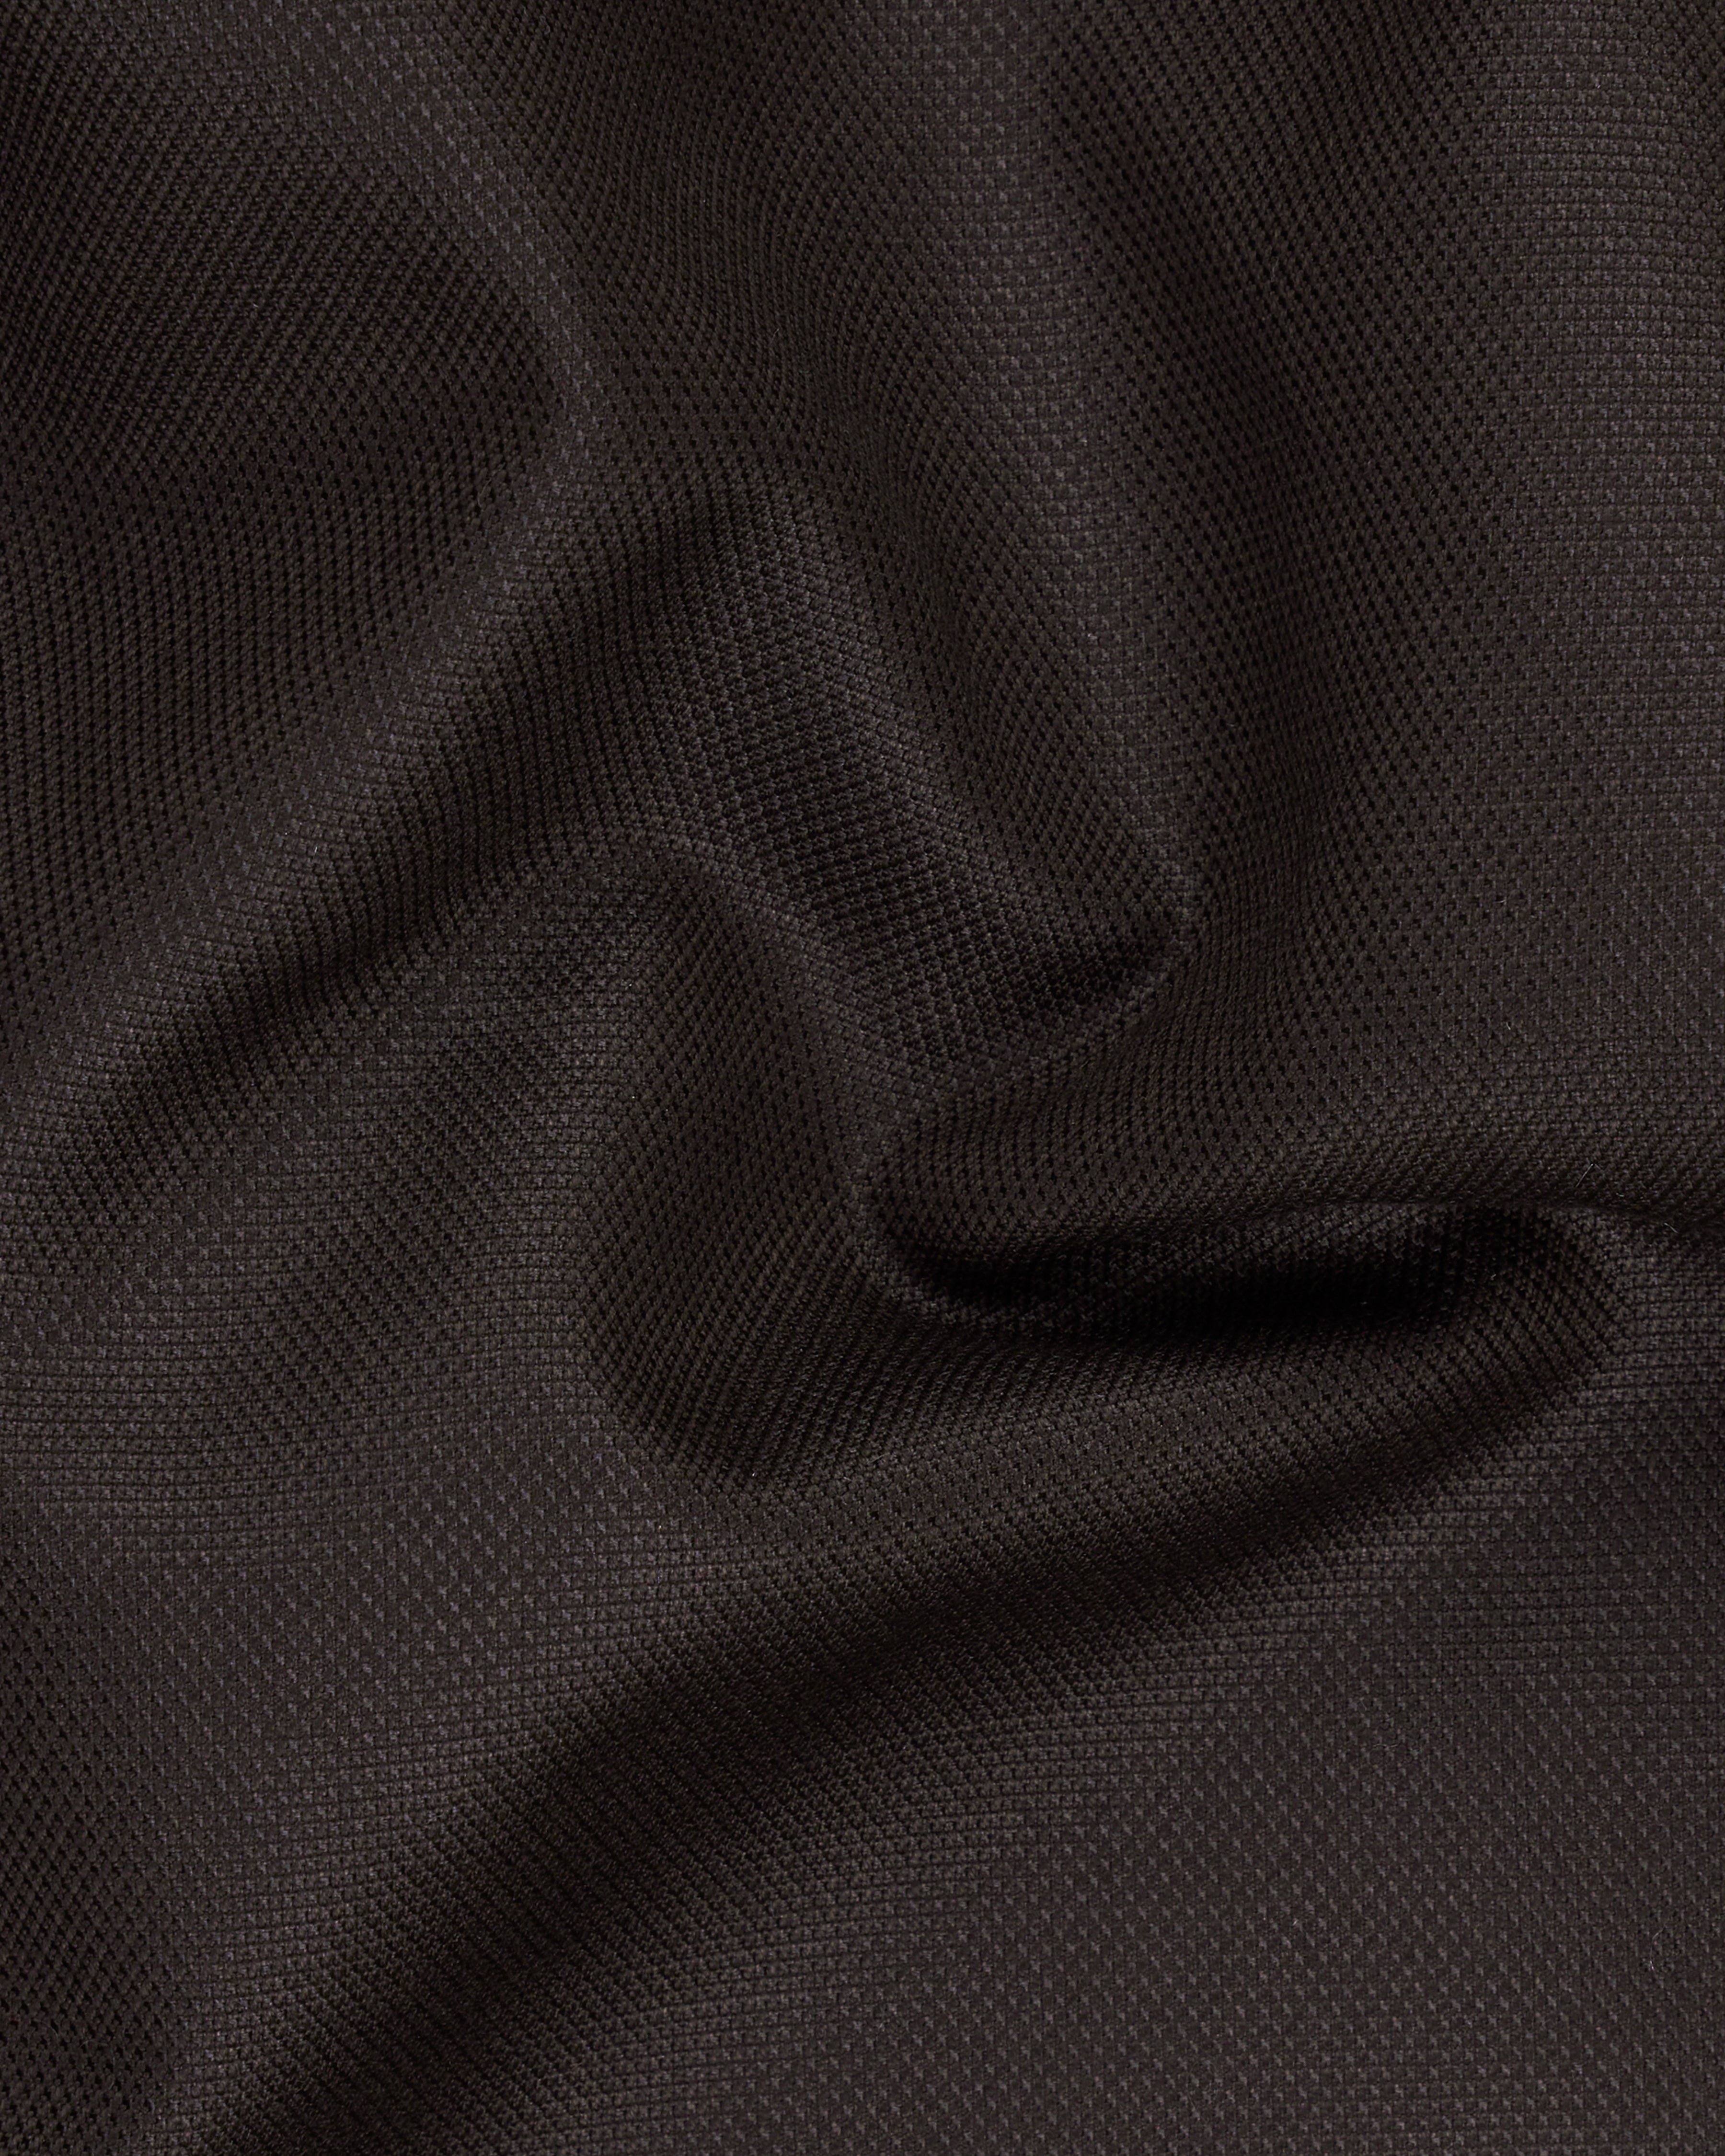 Dark Brown Textured Pant T2321-28, T2321-30, T2321-32, T2321-34, T2321-36, T2321-38, T2321-40, T2321-42, T2321-44